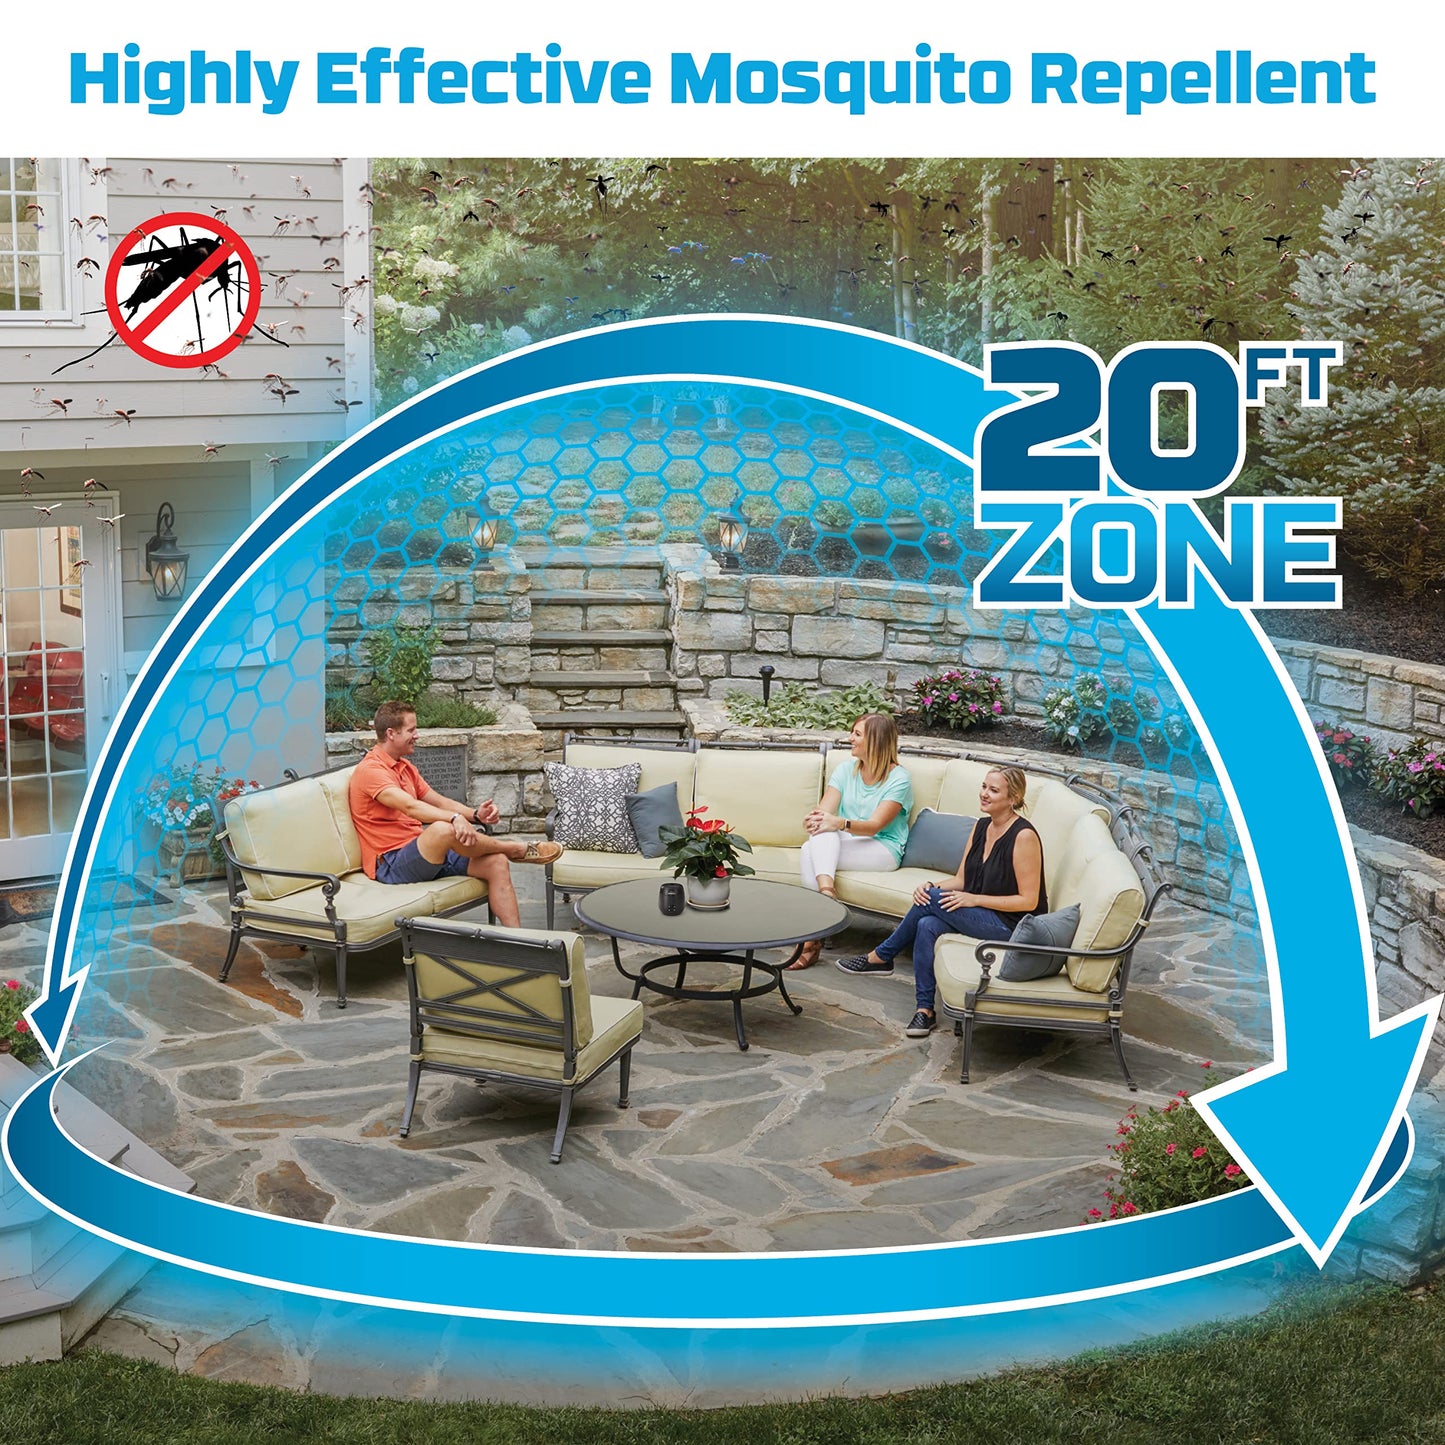 Répulsif anti-moustiques rechargeable avec zone de protection contre les moustiques